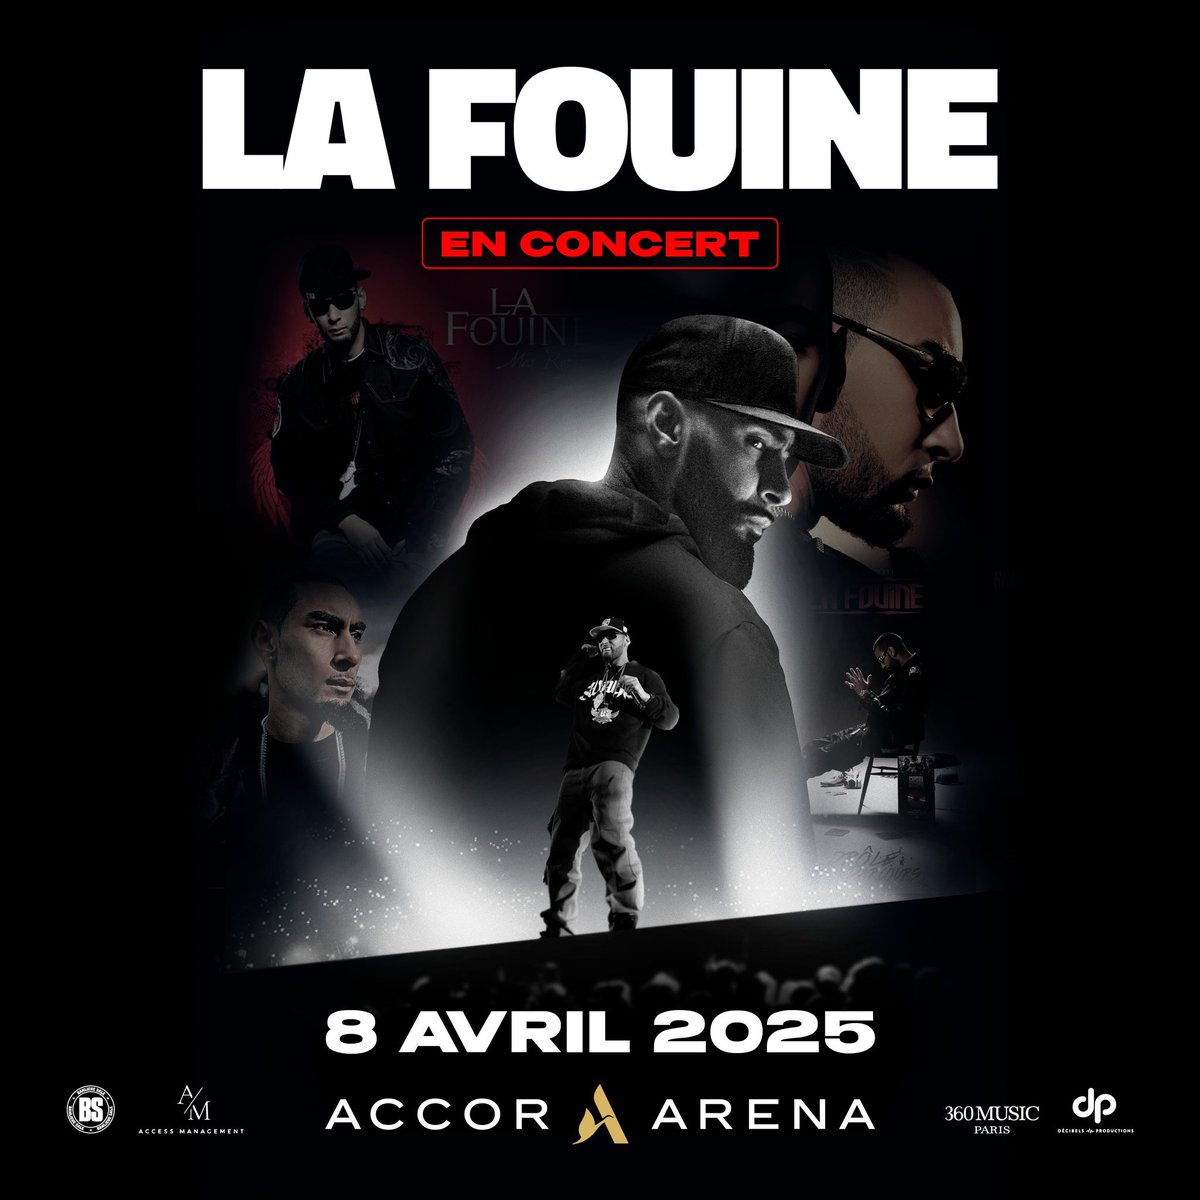 Le premier Accor Arena de La Fouine est sold out 👏🏻 Rendez-vous le 8 avril 2025